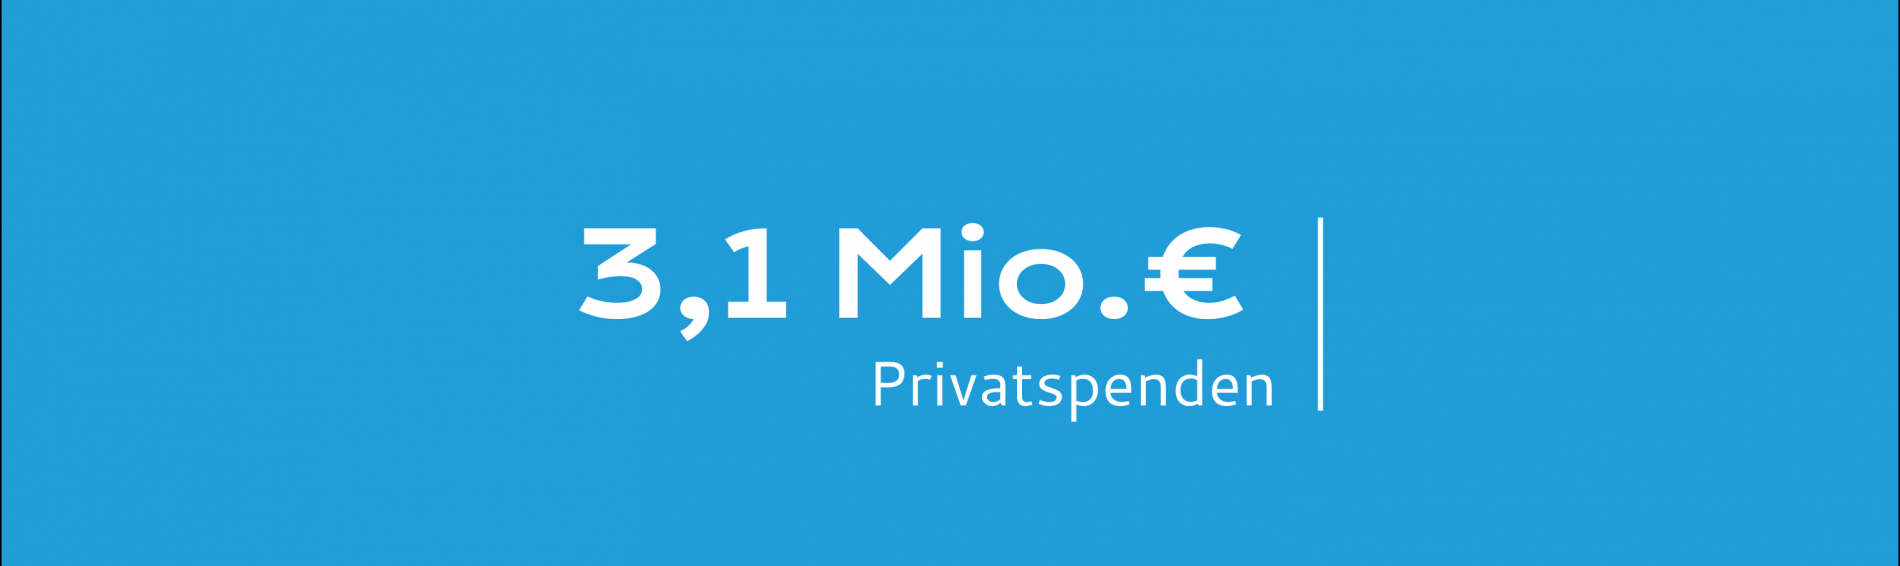 3,1 Millionen Euro aus privaten Spenden